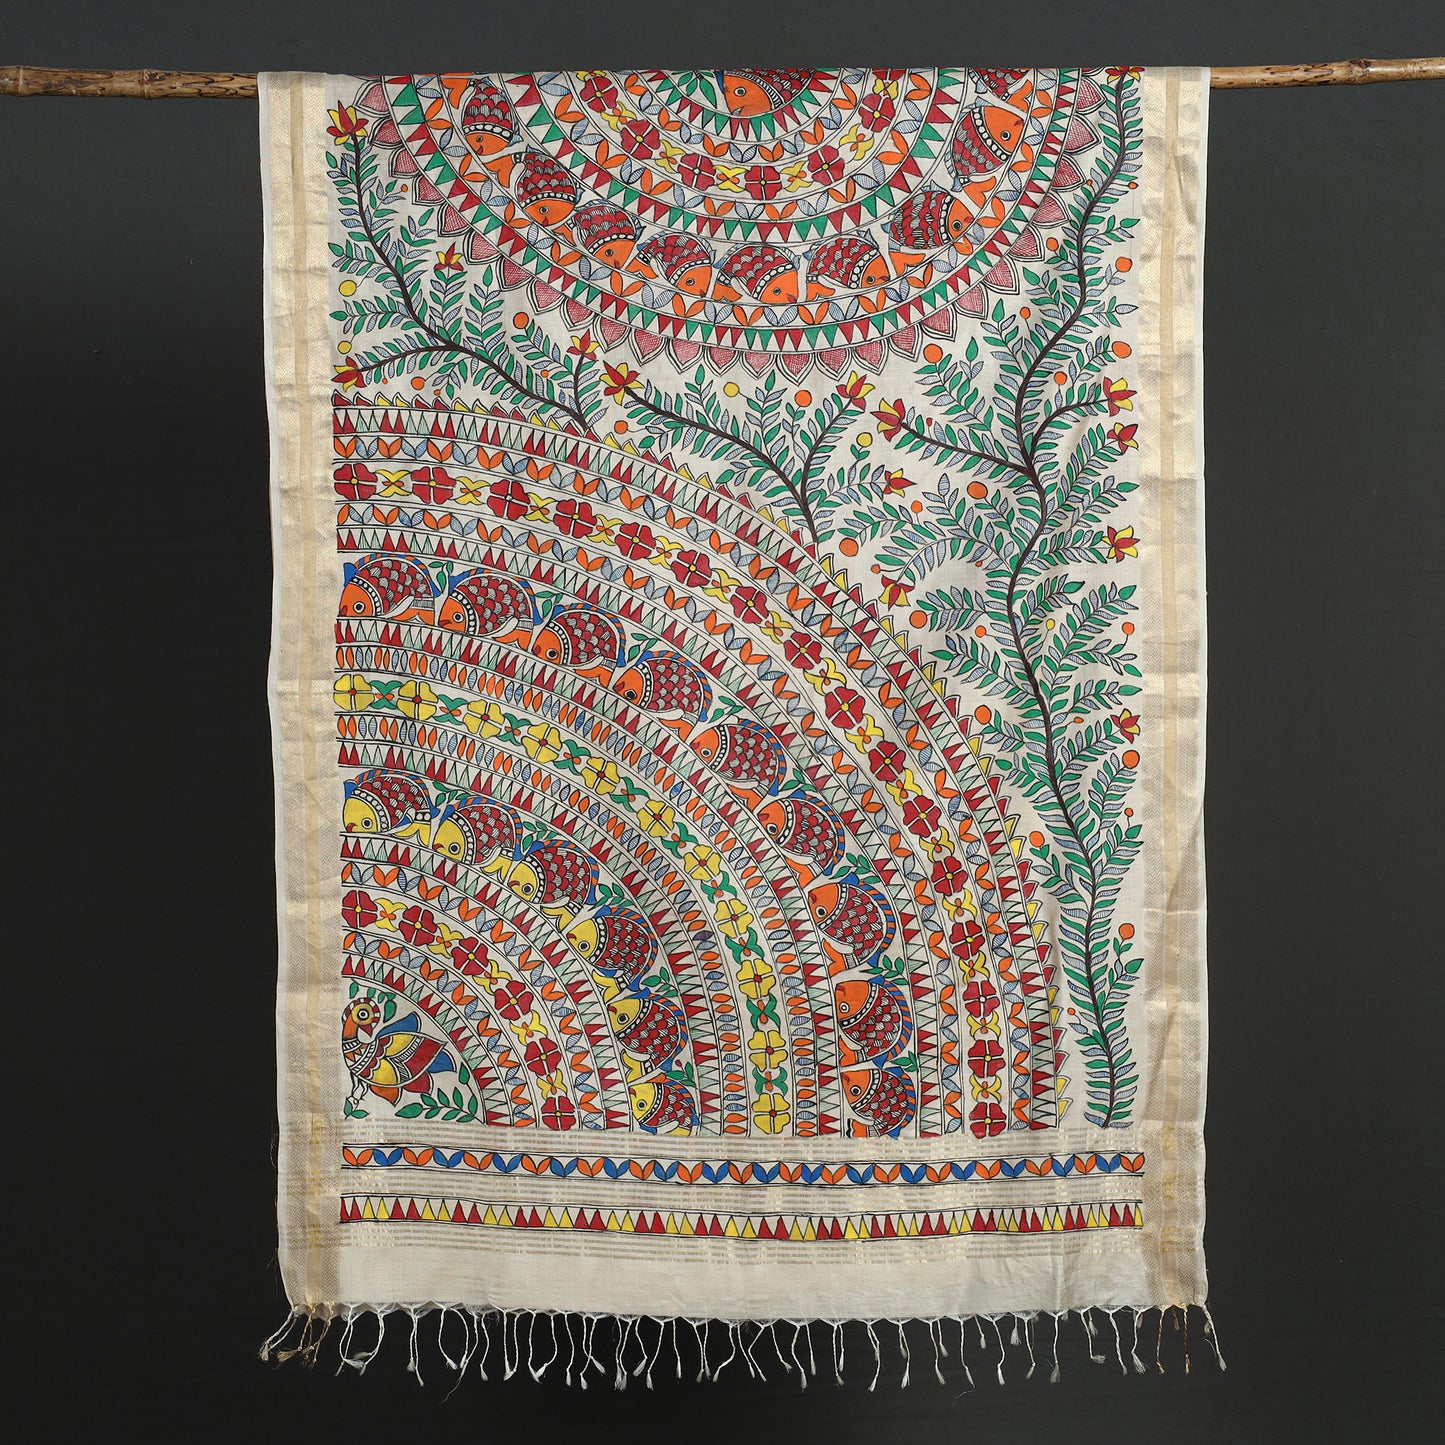 Multicolor - Madhubani Handpainted Tussar Cotton Handloom Zari Border Dupatta with Tassels